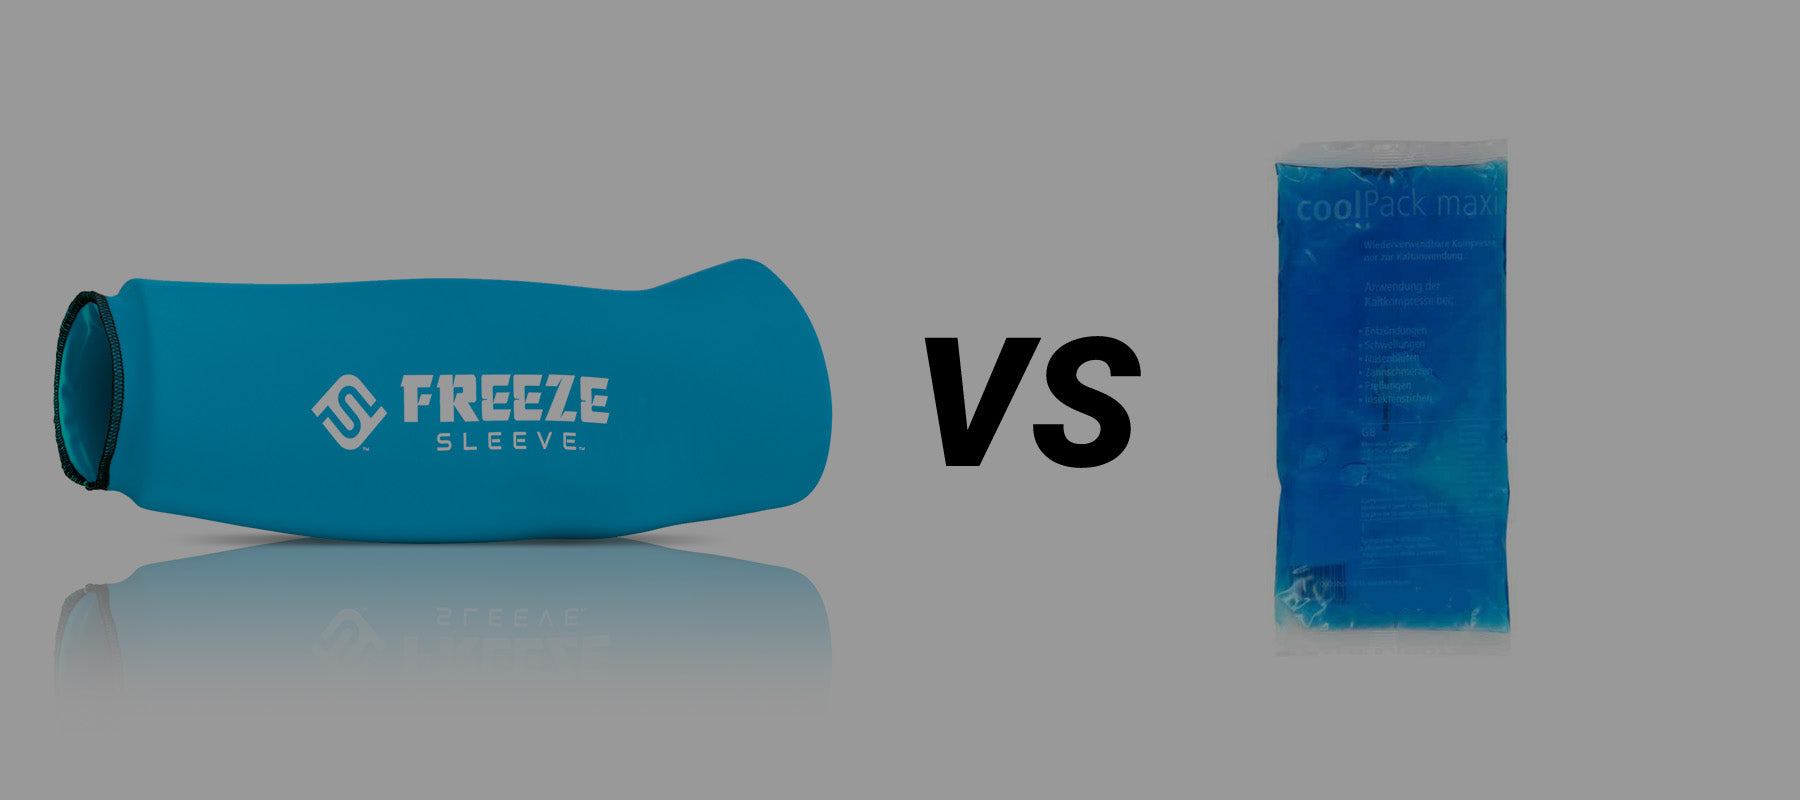 Die Vorteile von Freeze Sleeve gegenüber Coolpacks: Die neue Generation der Kältetherapie